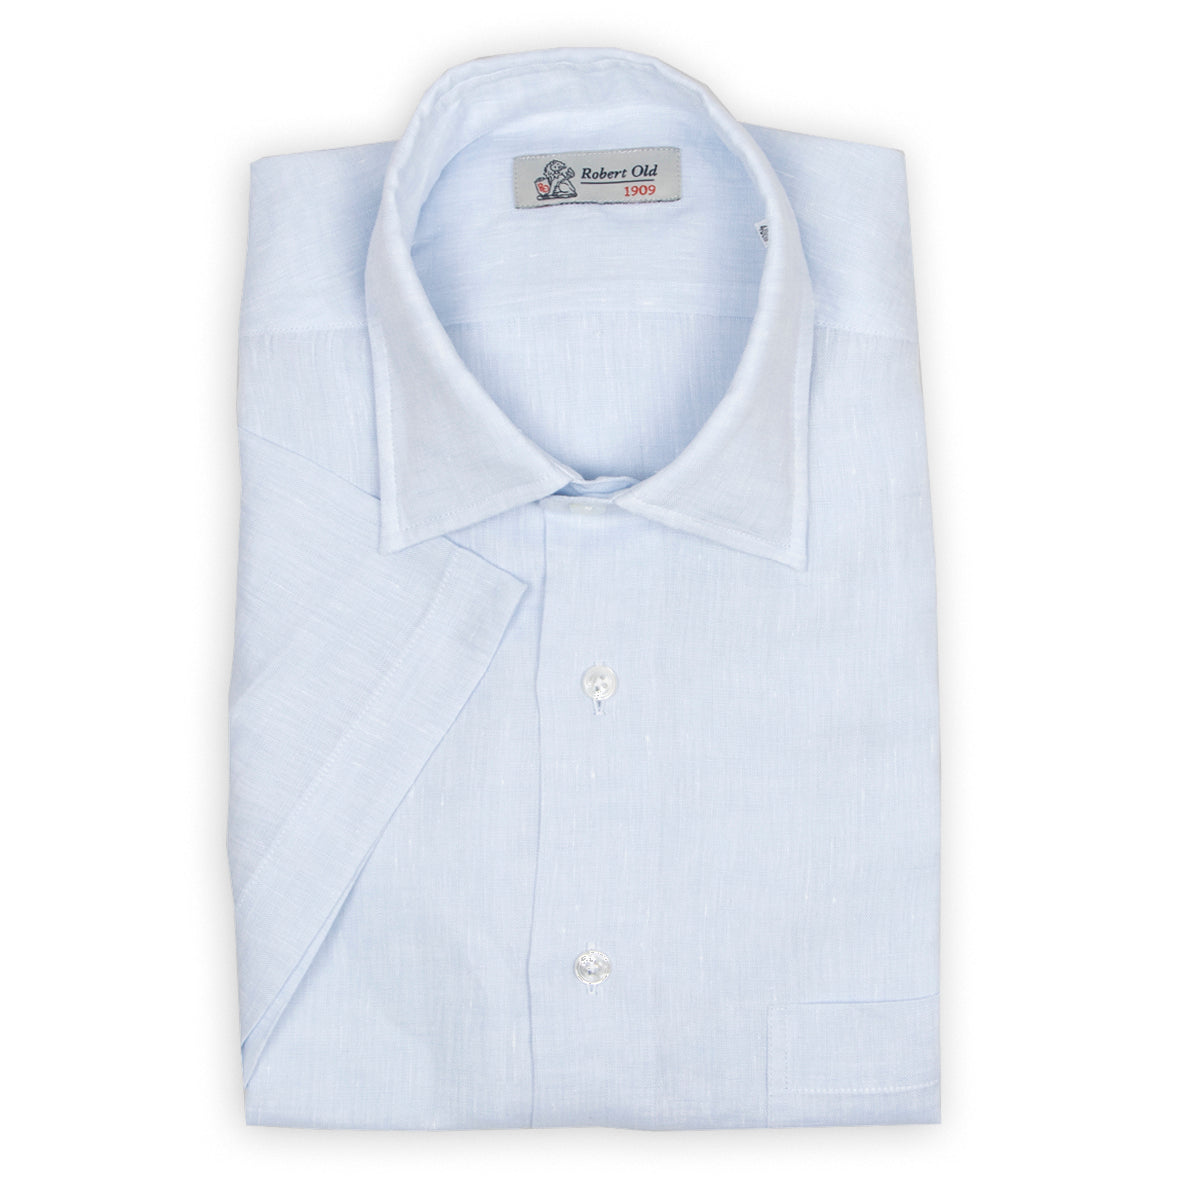 Light Blue Linen Short Sleeve Shirt  Robert Old   